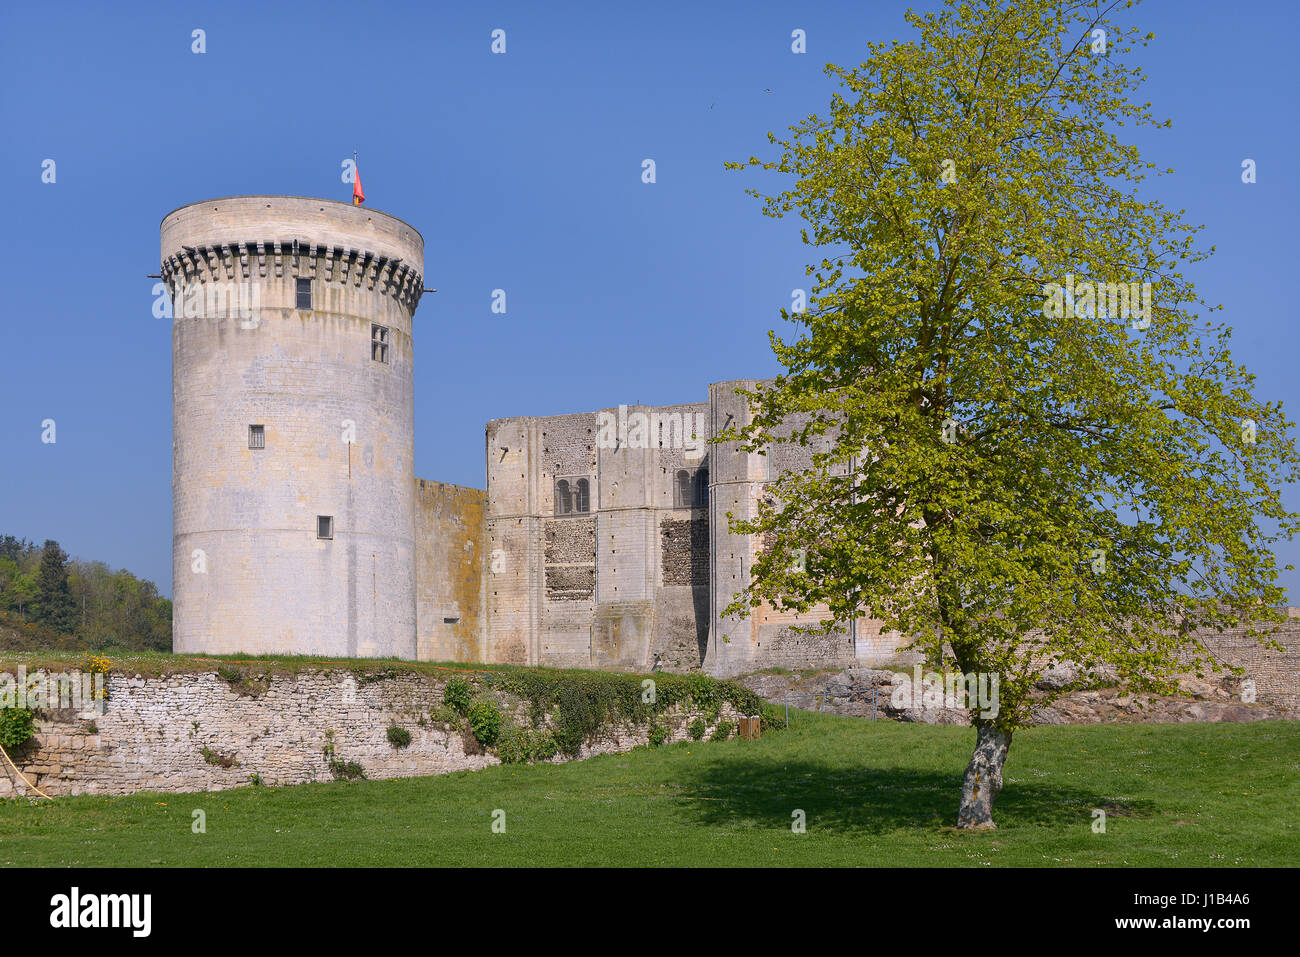 Château de Guillaume le Conquérant de Falaise, une commune française, située dans le département du Calvados et la région Basse-Normandie, France Banque D'Images